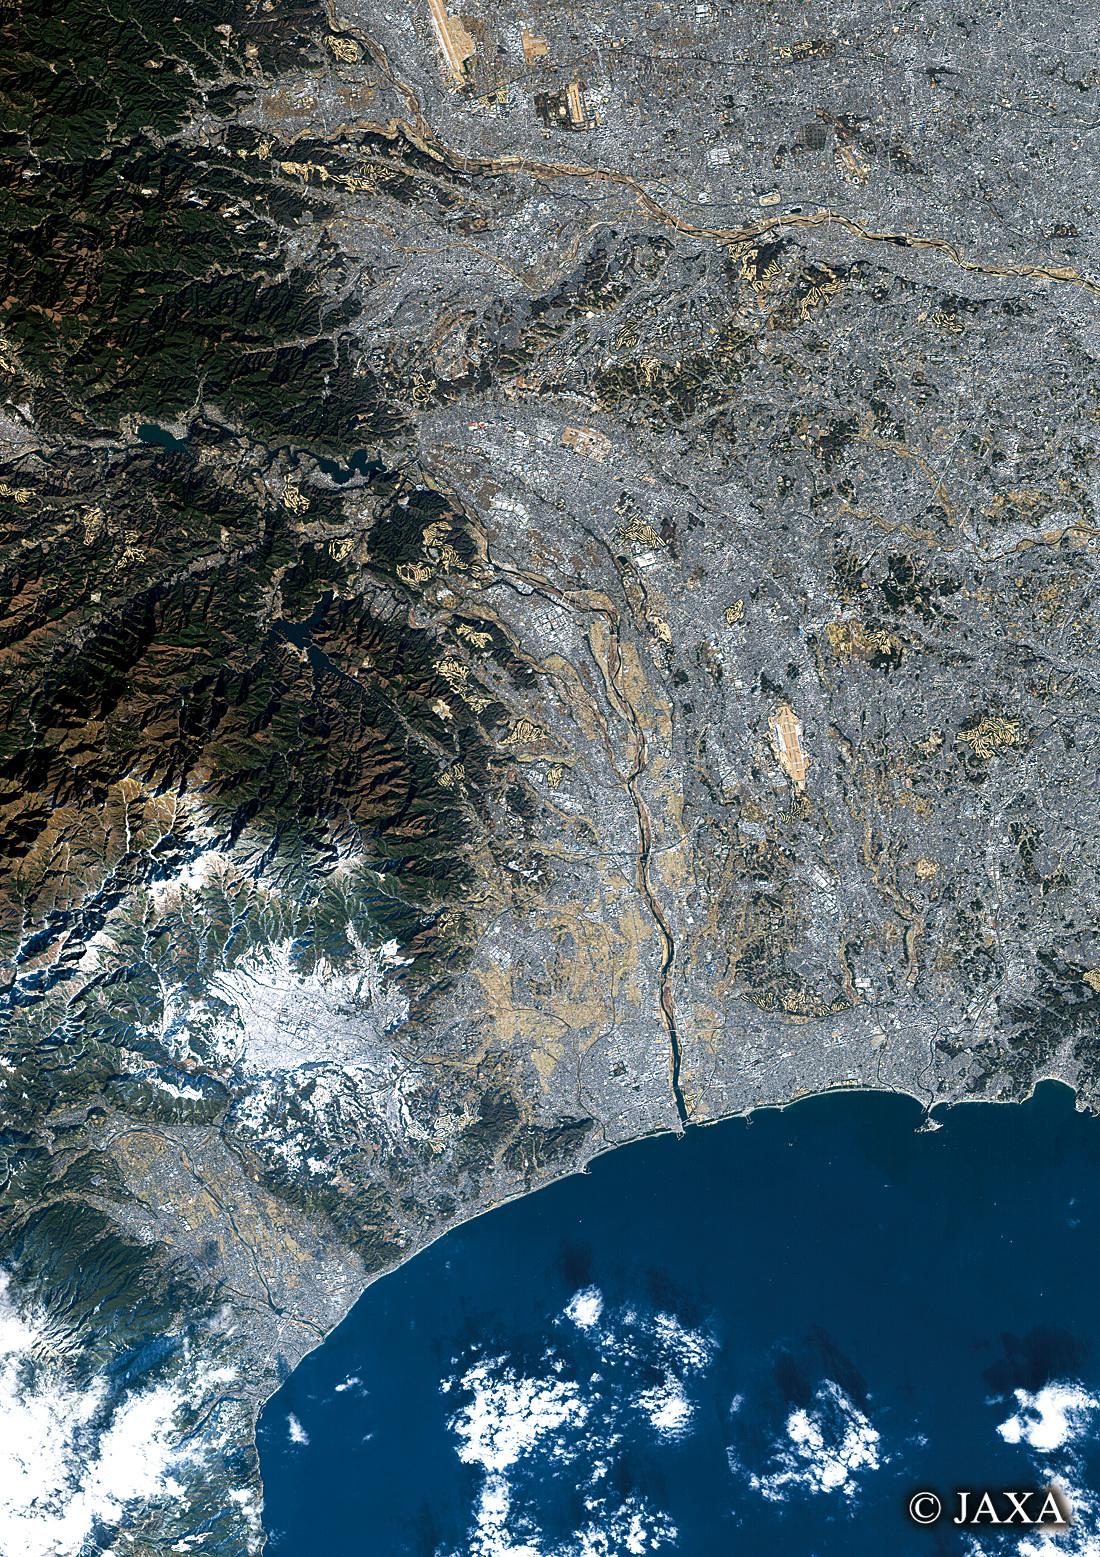 だいちから見た日本の都市 相模原・相模湾:衛星画像